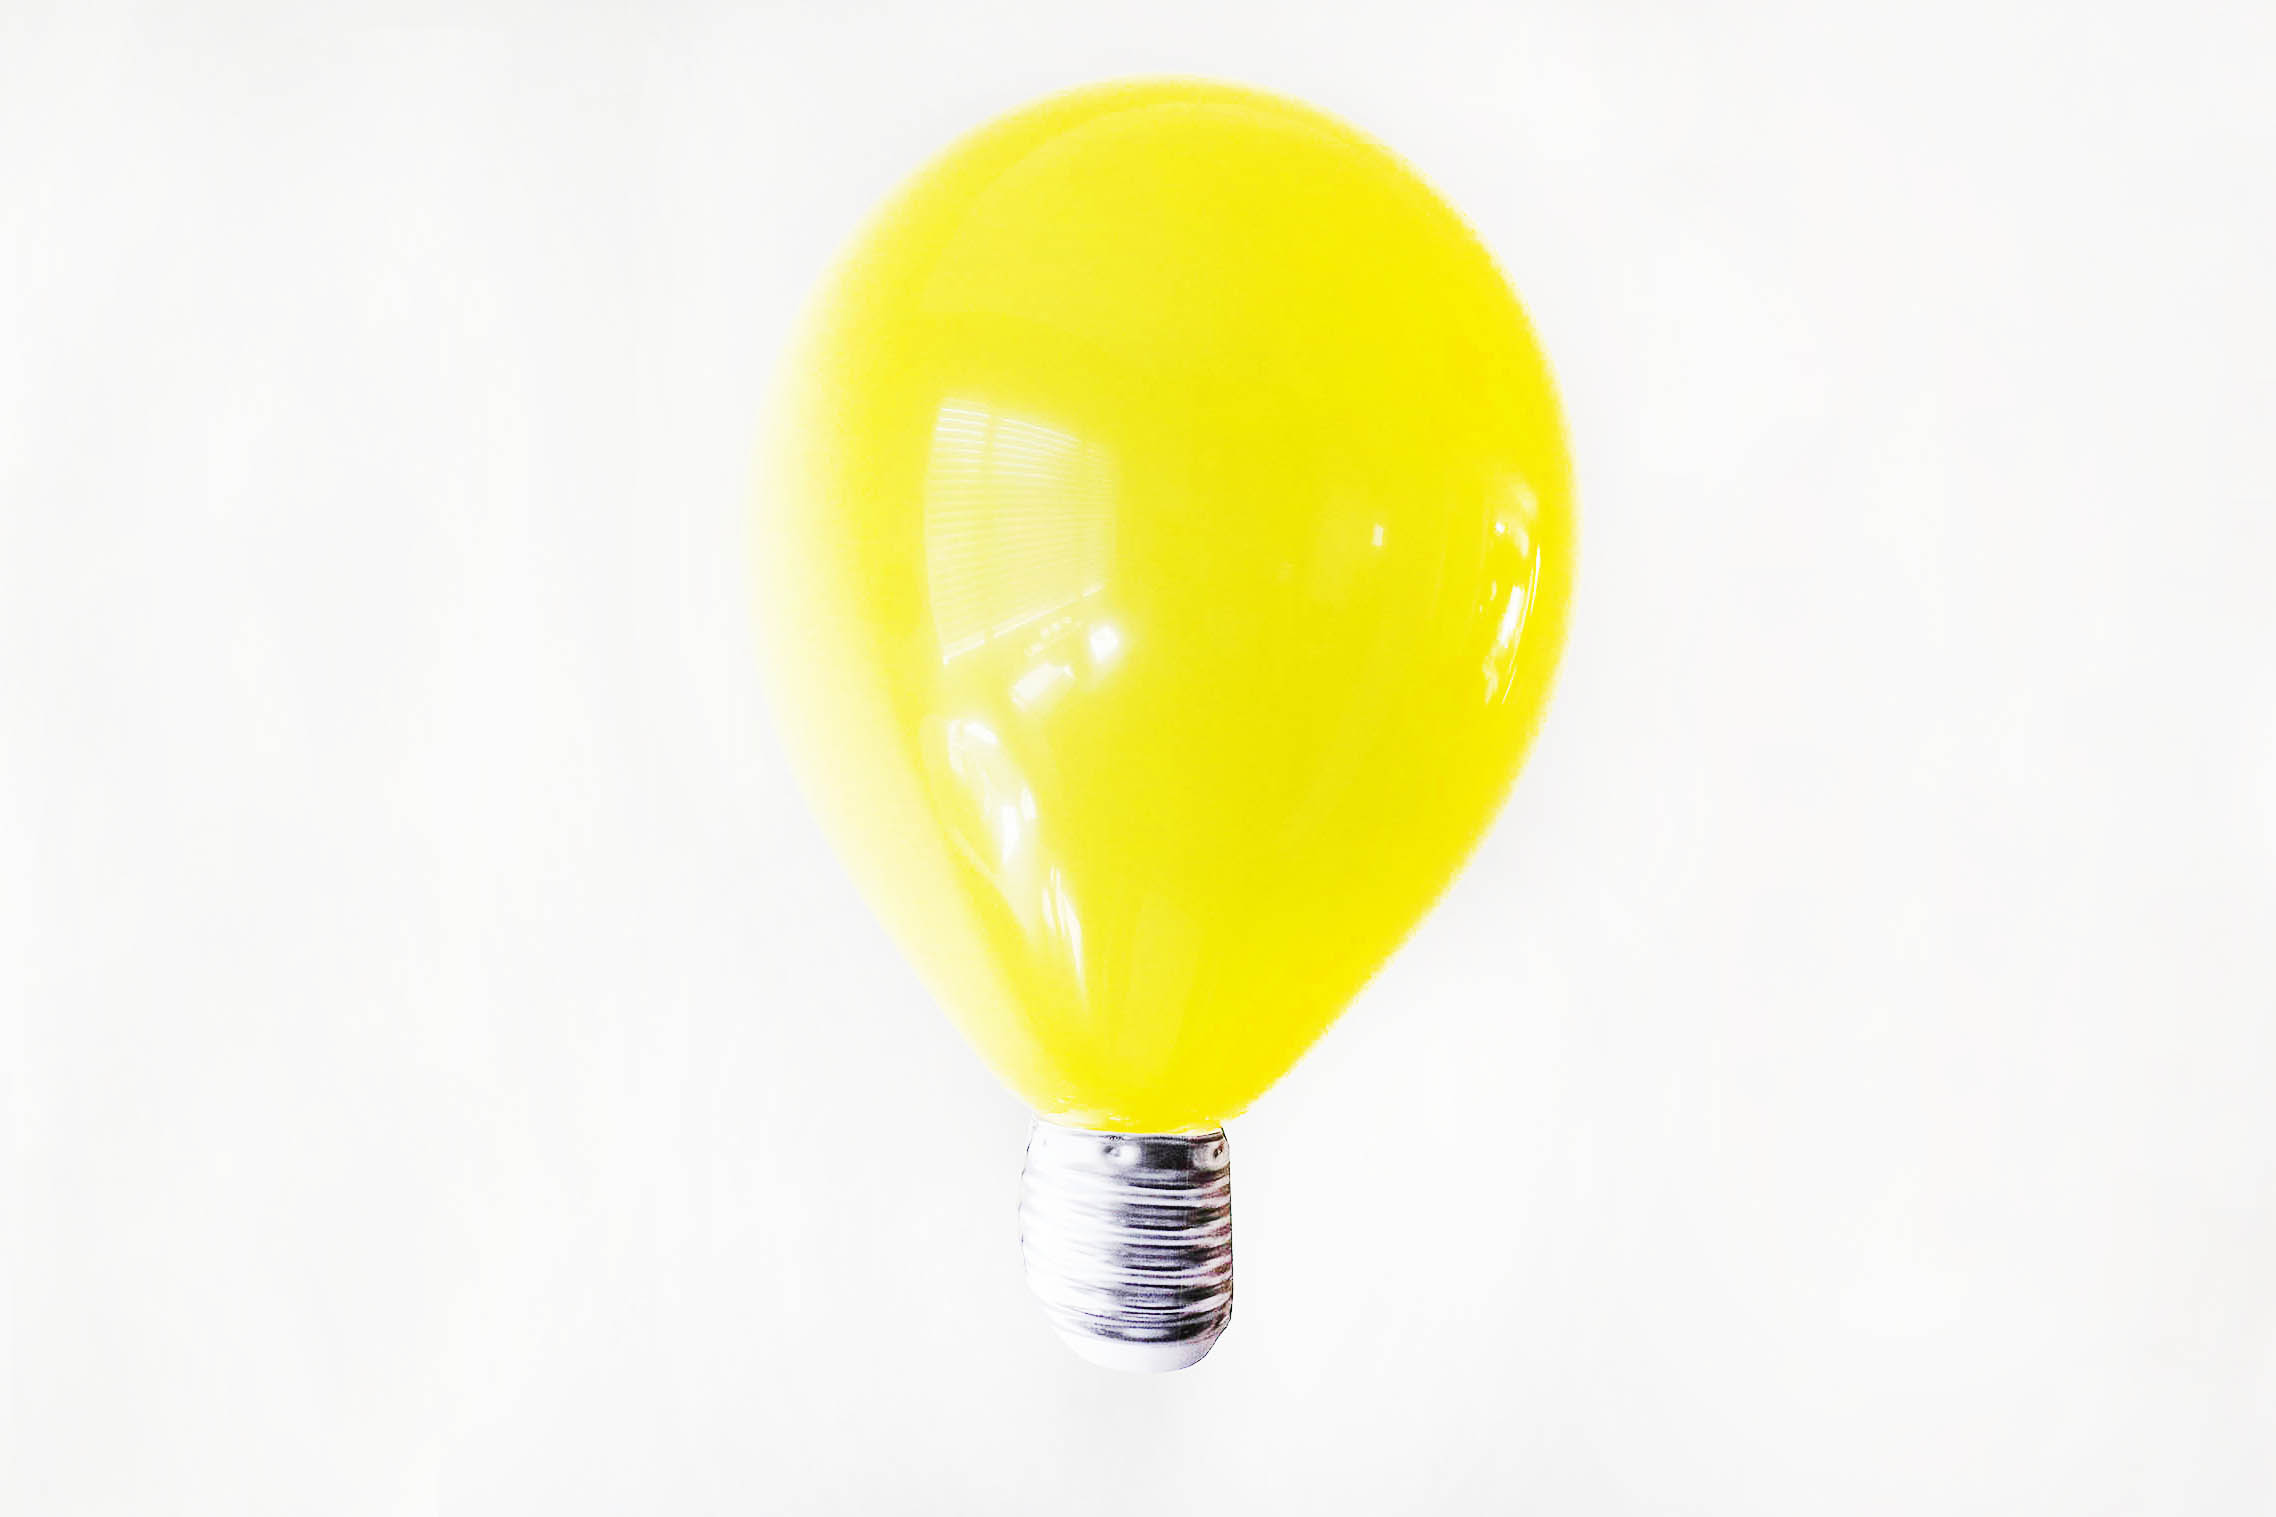 DIY Lightbulb Balloons for fun back to school photos!